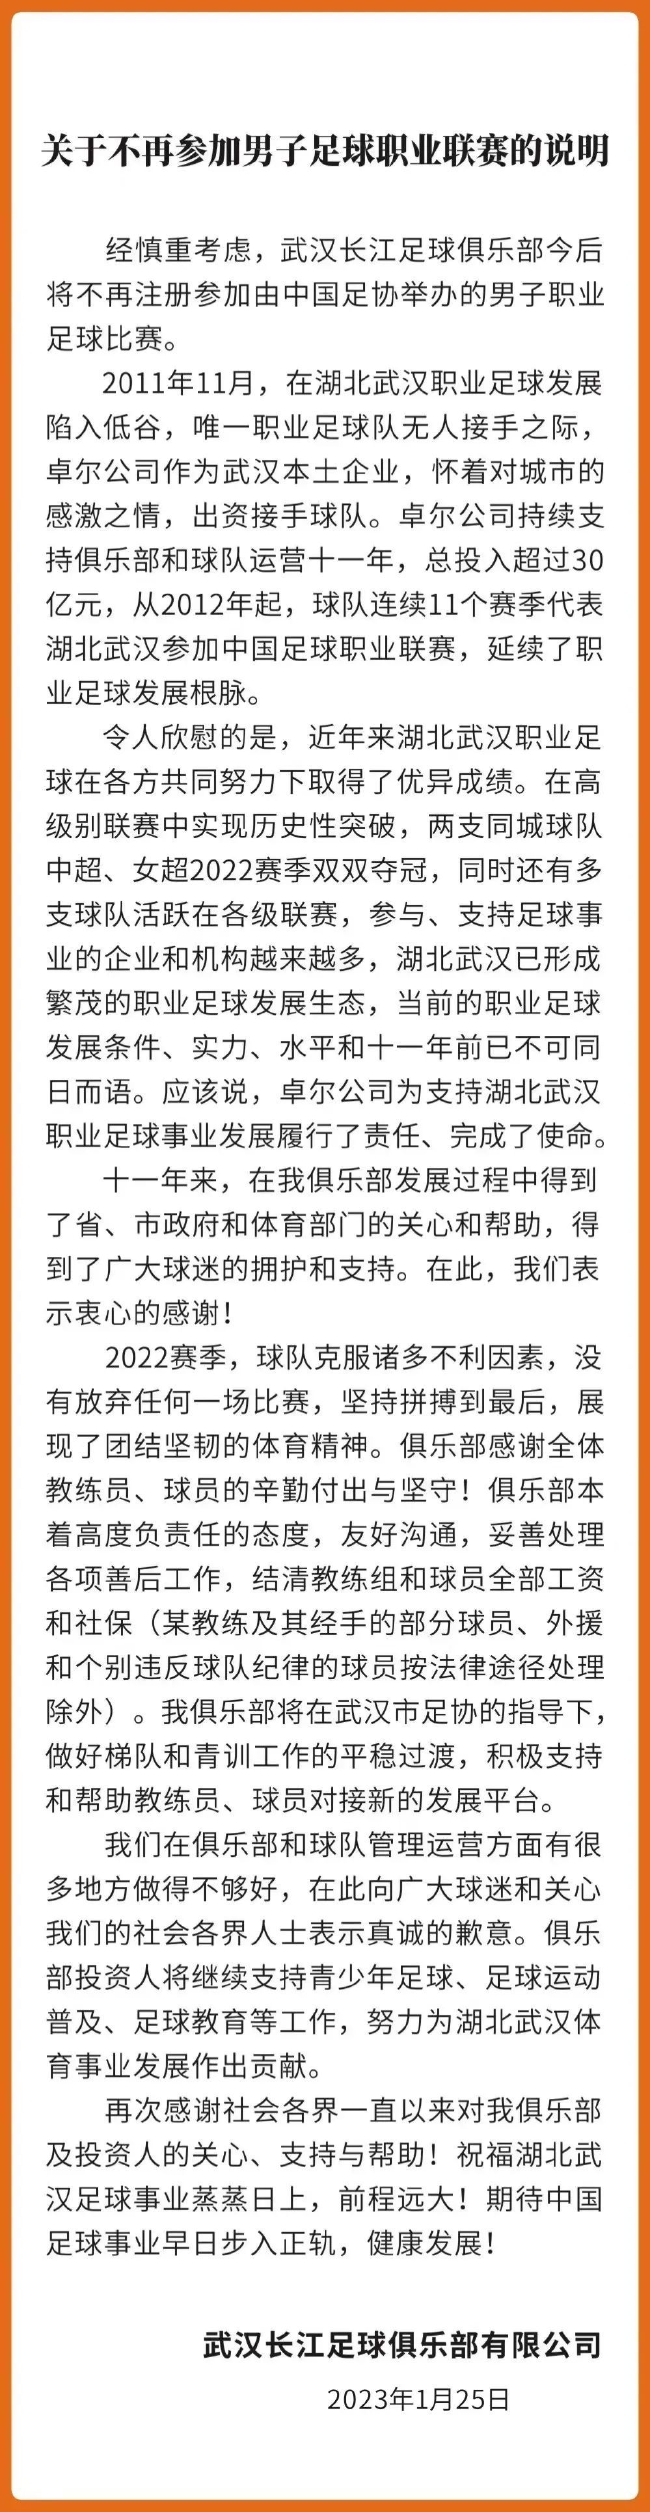 武漢長江足球俱樂部發聲明。